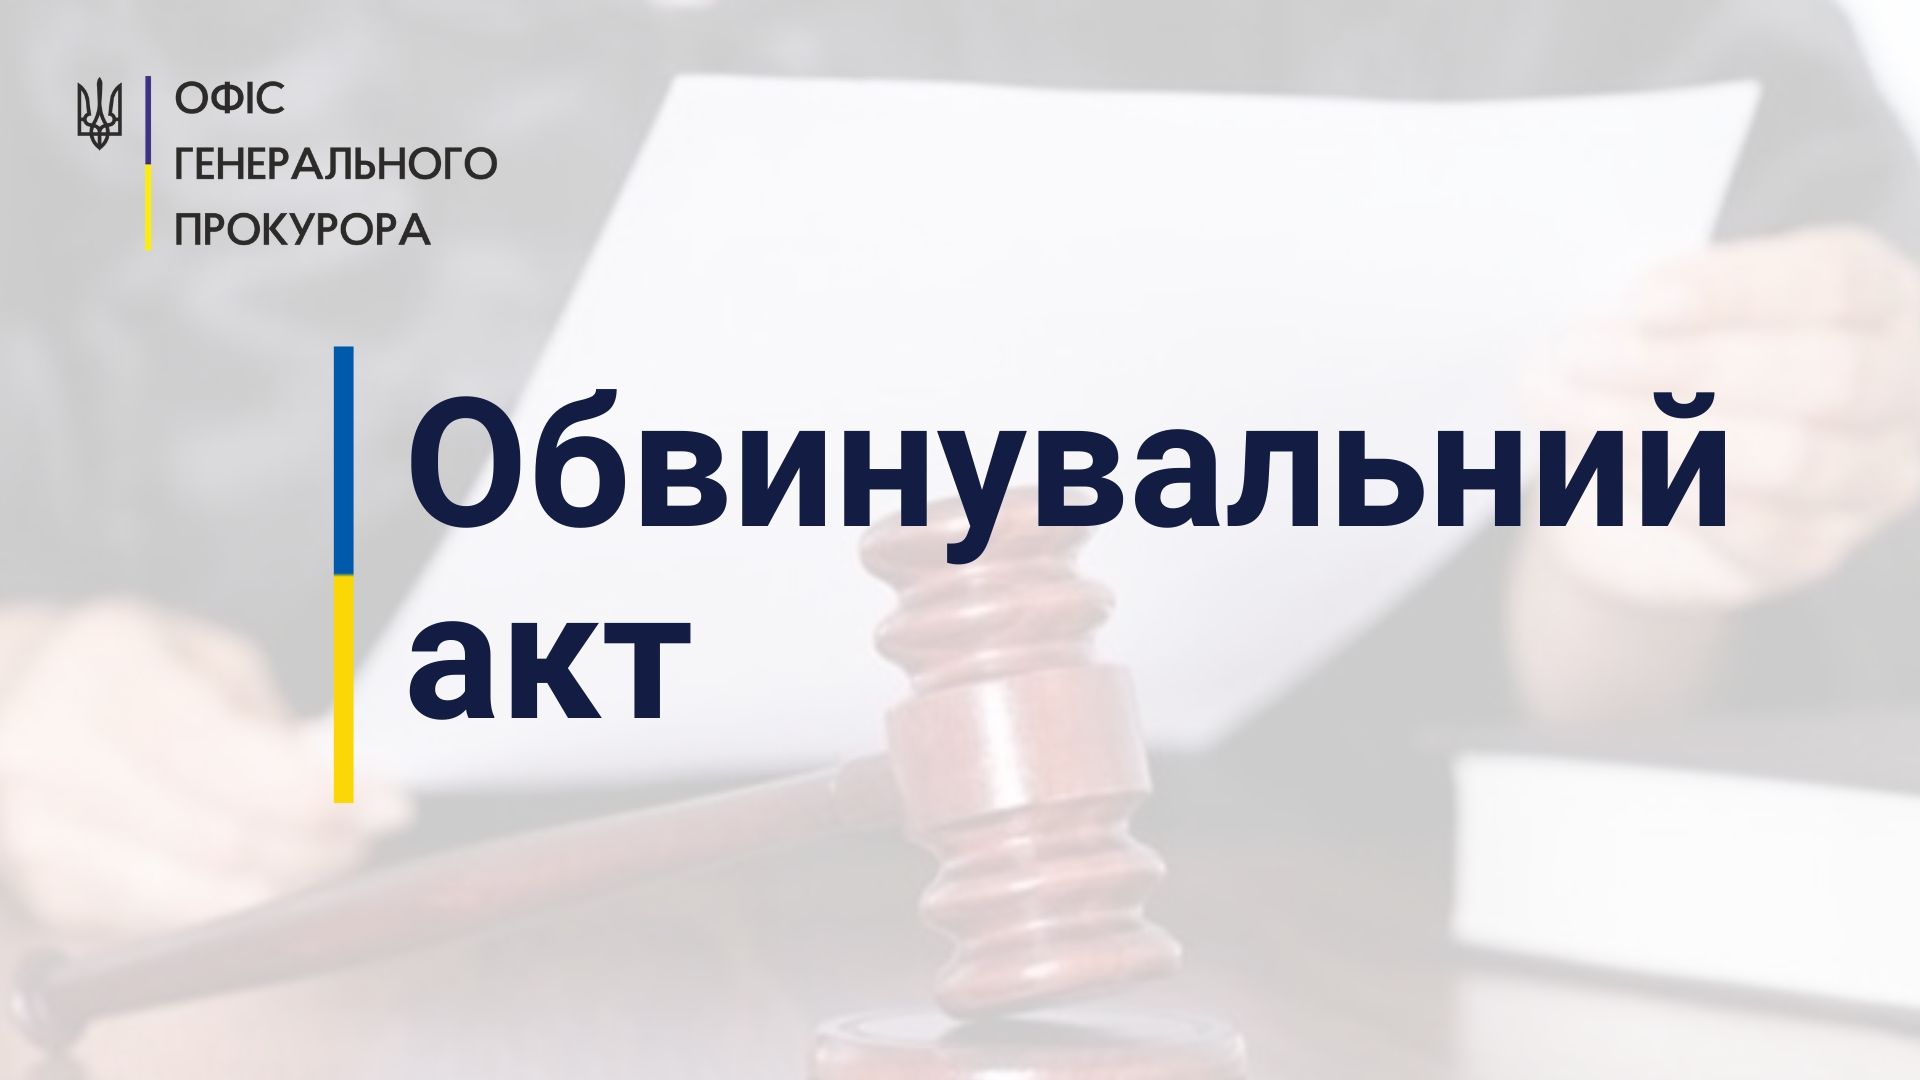 Підробка документів для отримання понад 1,2 млн грн соціальної допомоги - на Київщині судитимуть ексвійськовослужбовців